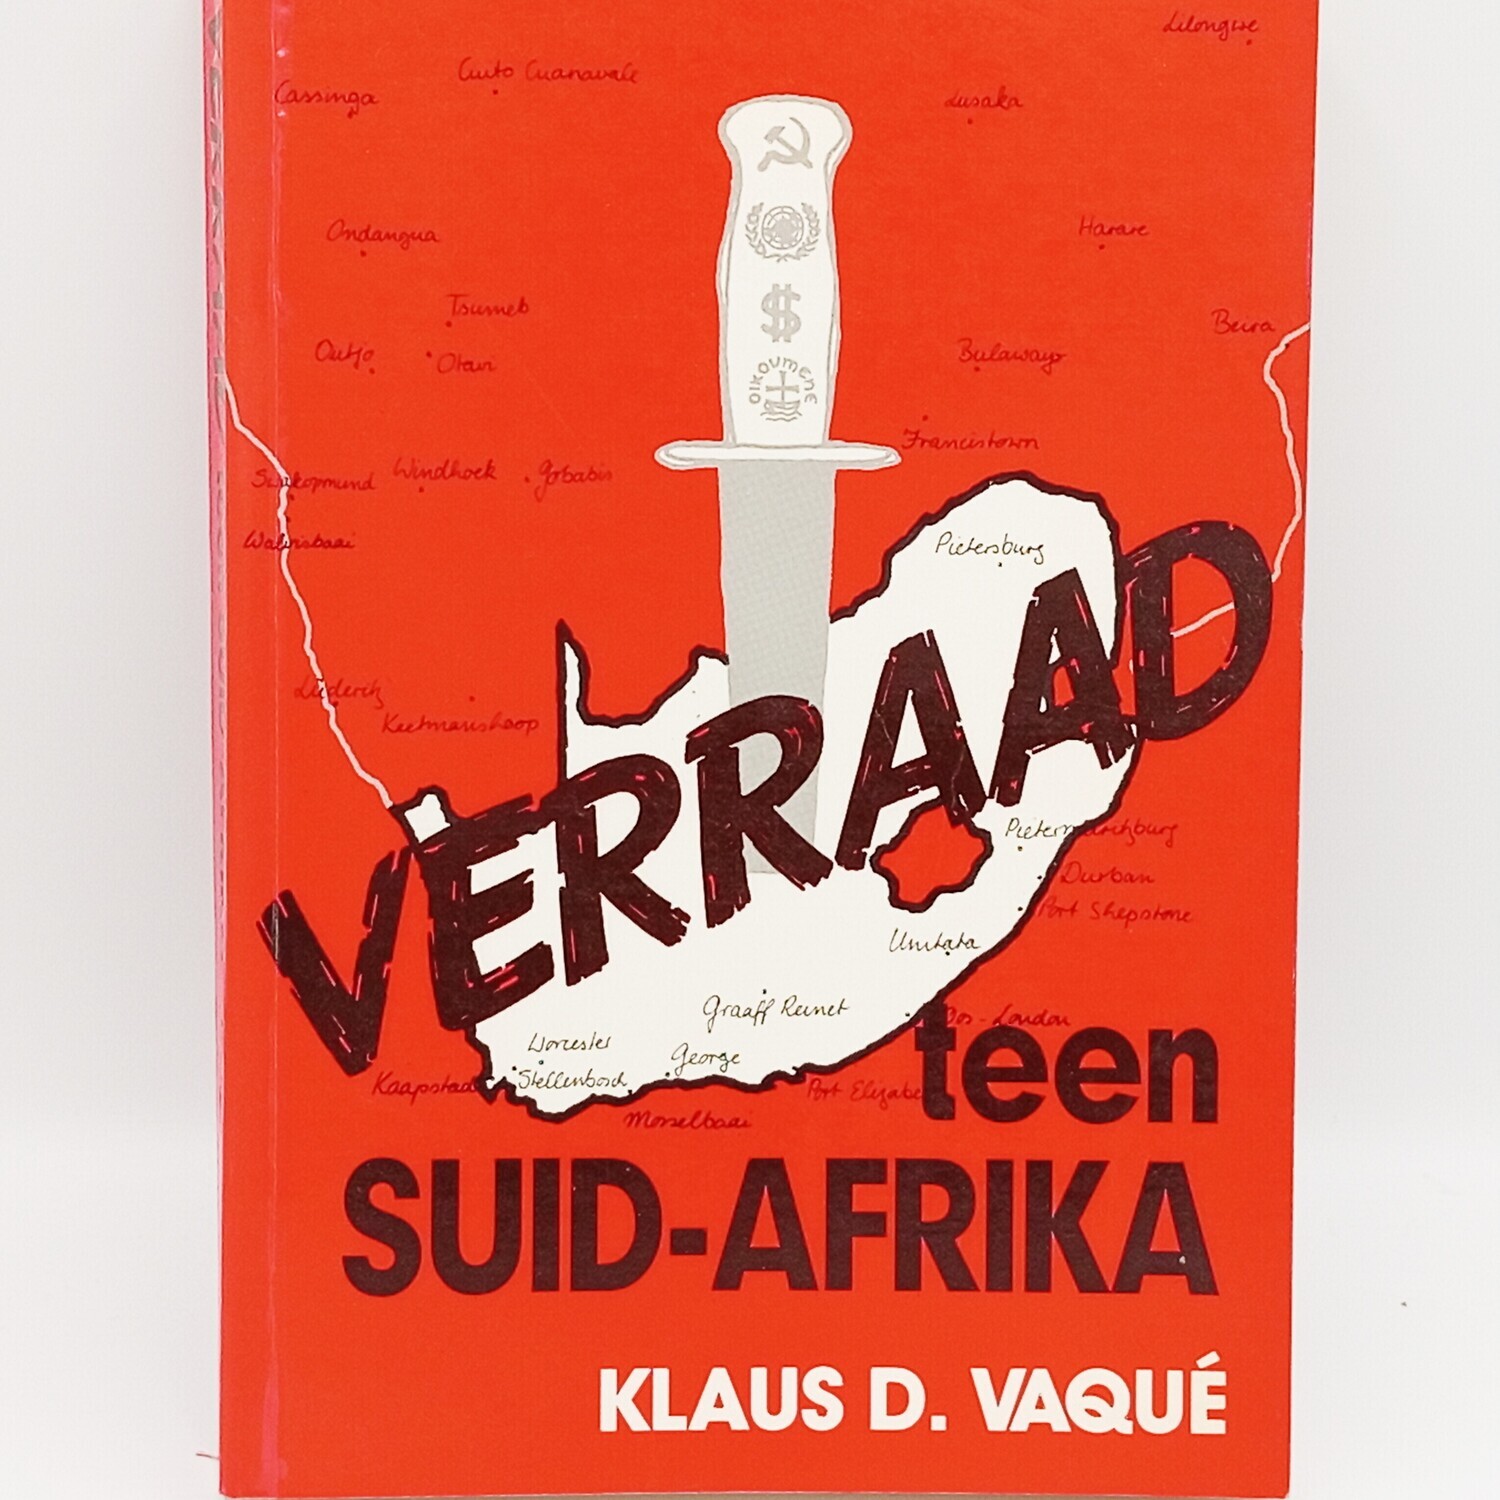 Verraad teen Suid- Afrika deur Klaus D. Vaque